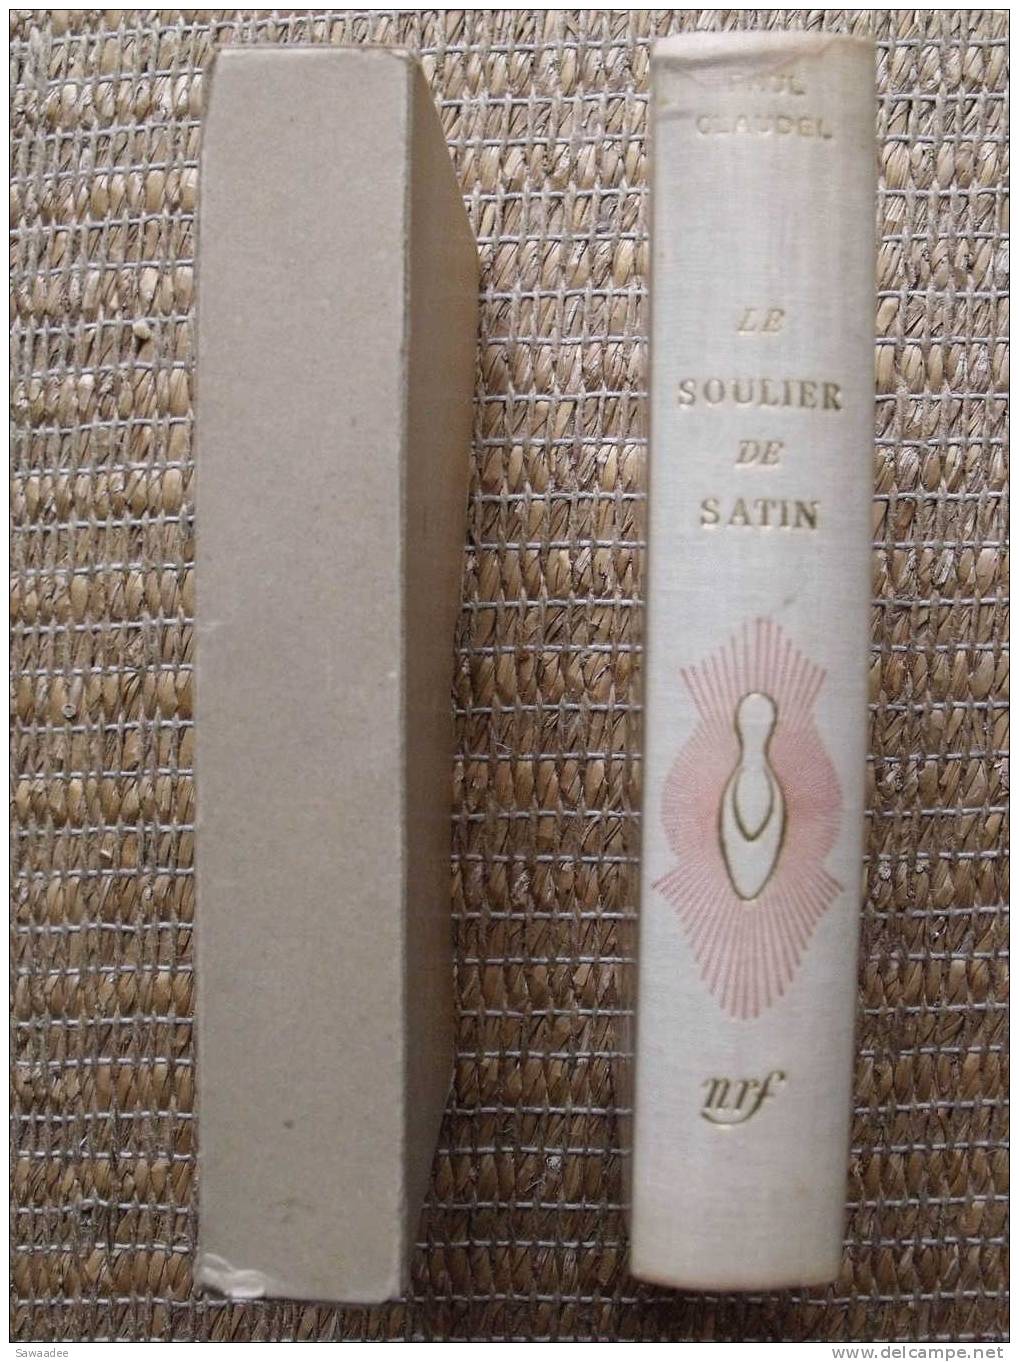 LIVRE - LE SOULIER DE SATIN - PAUL CLAUDEL - GALLIMARD -NRF - 1954 - VERSION INTEGRALE -  EXEMPLAIRE N°2302 - Auteurs Français